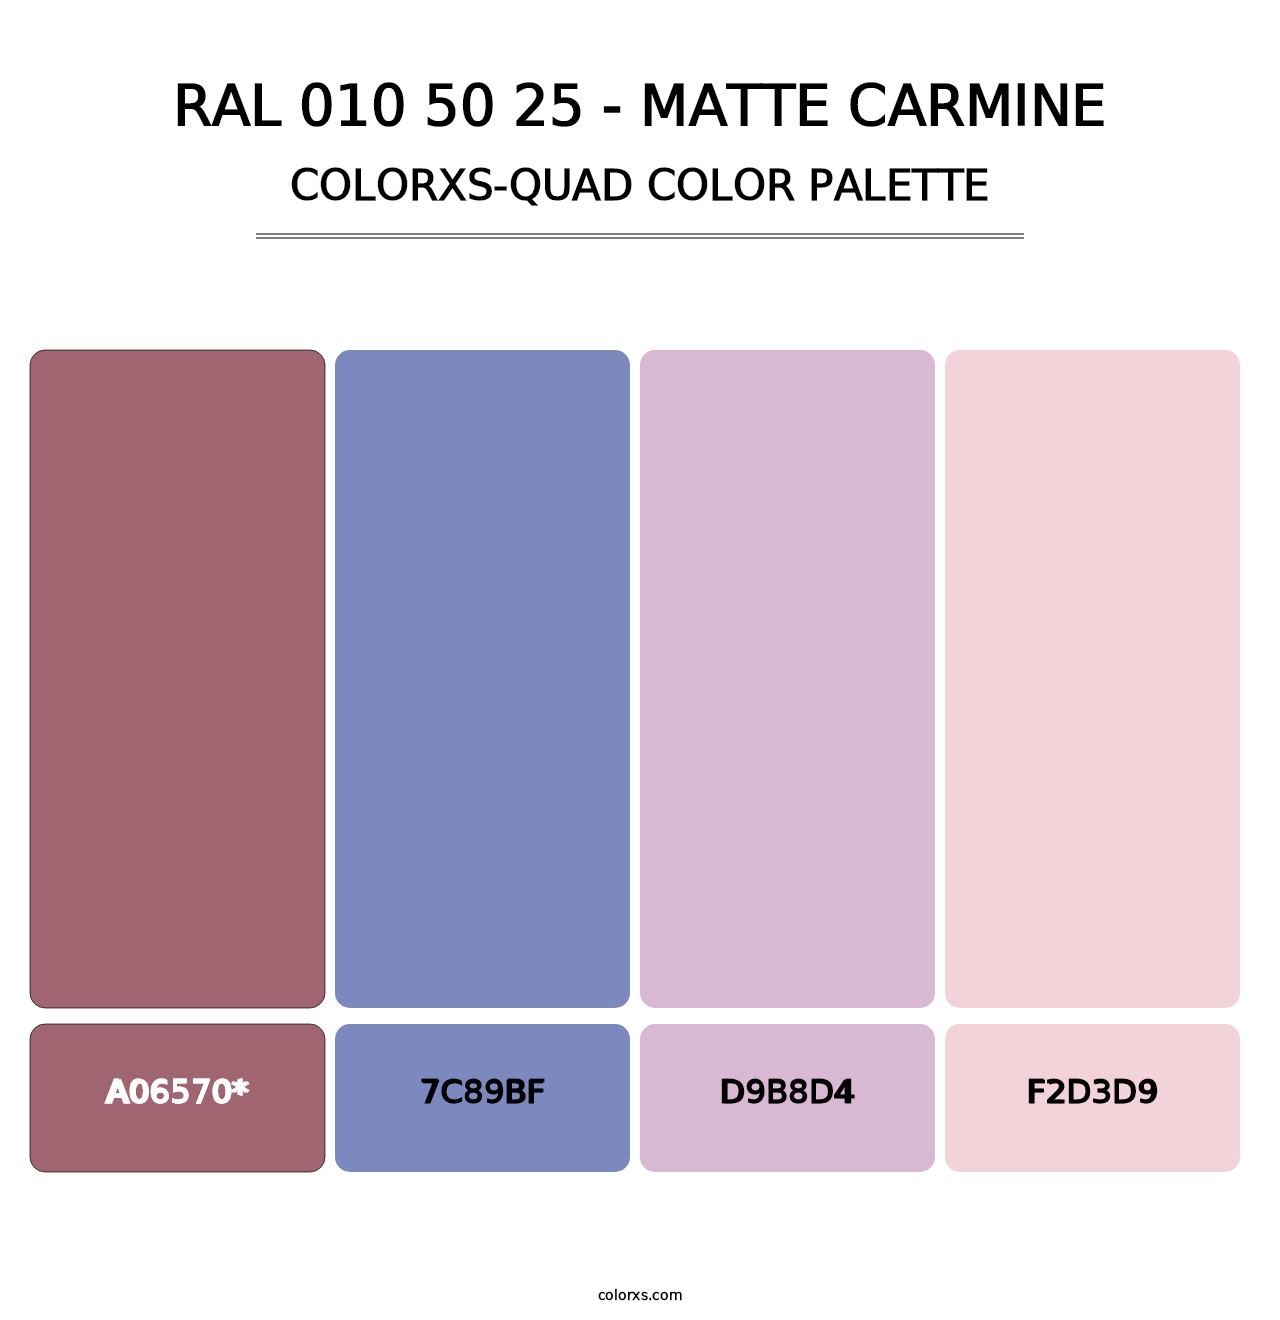 RAL 010 50 25 - Matte Carmine - Colorxs Quad Palette